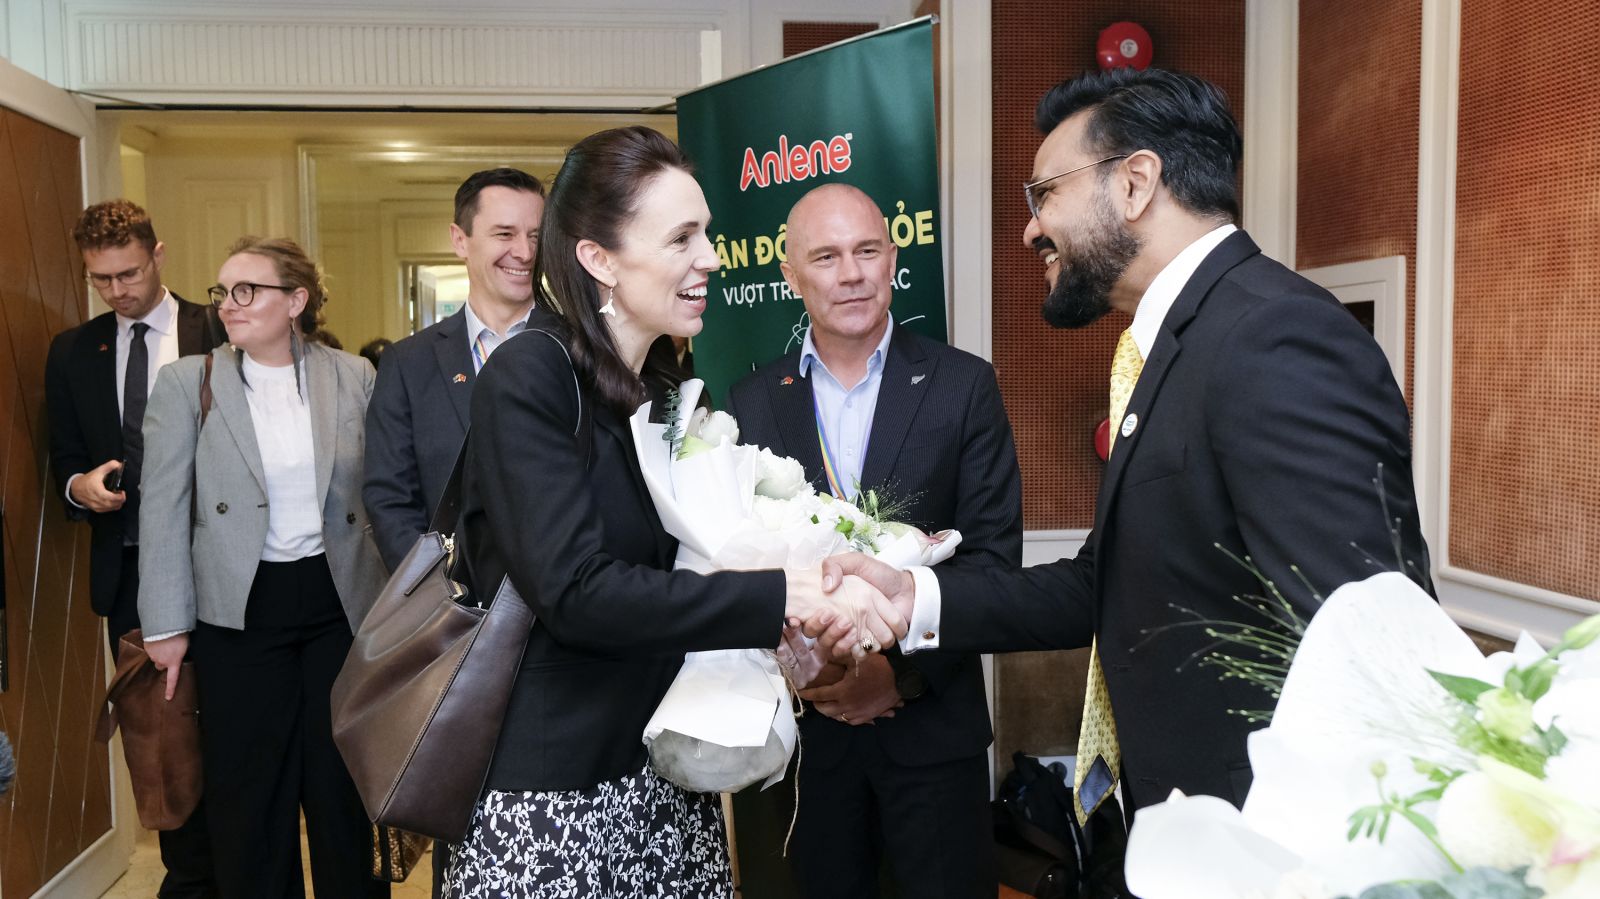 Thủ tướng New Zealand Jacinda Ardern đến thăm khu trưng bày nhãn hàng Anlene - Anchor và gặp gỡ Tổng giám đốc công ty Fonterra Brands Việt Nam